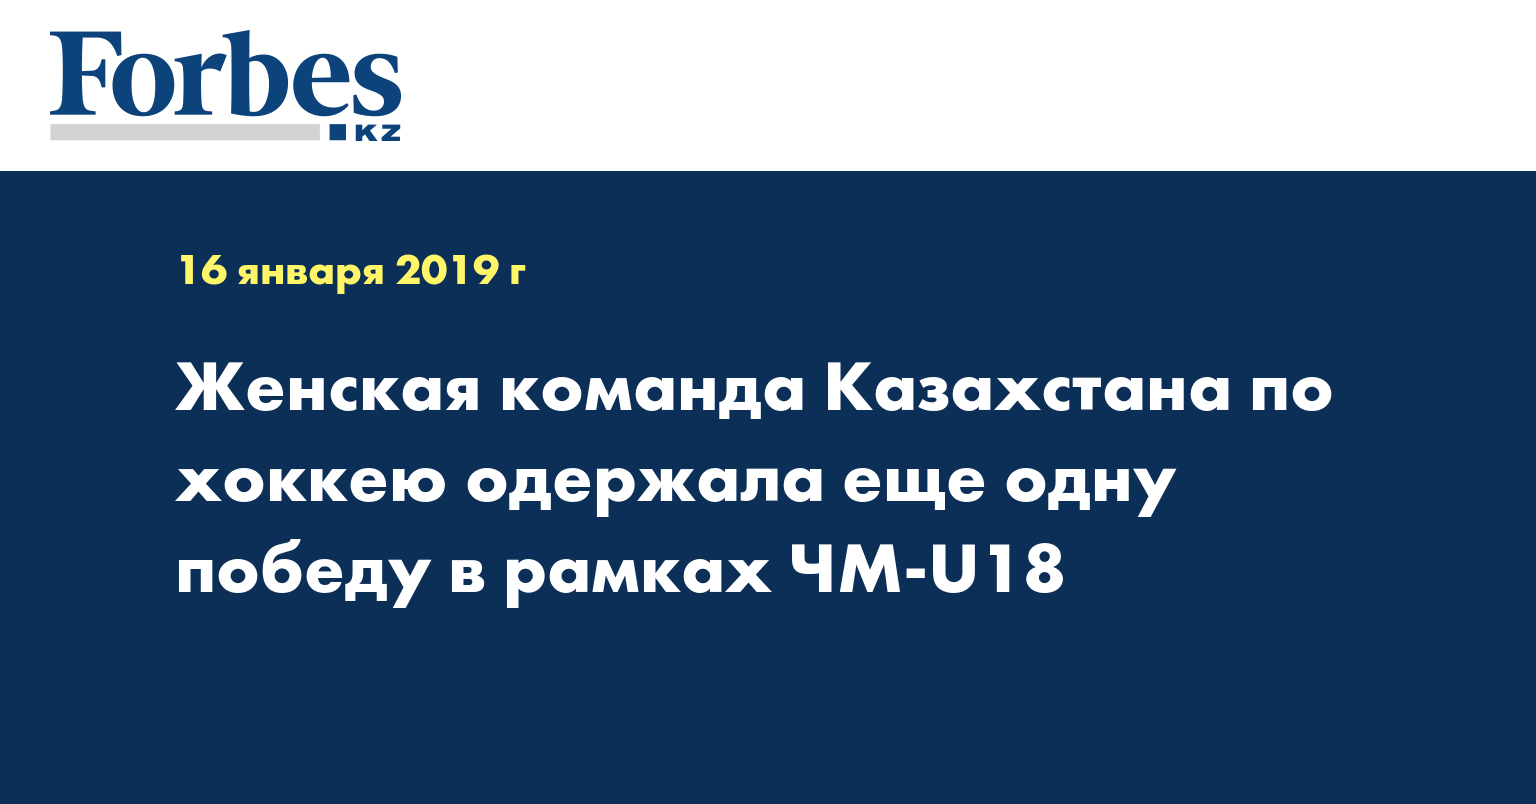 Женская команда Казахстана по хоккею одержала еще одну победу в рамках ЧМ-U18